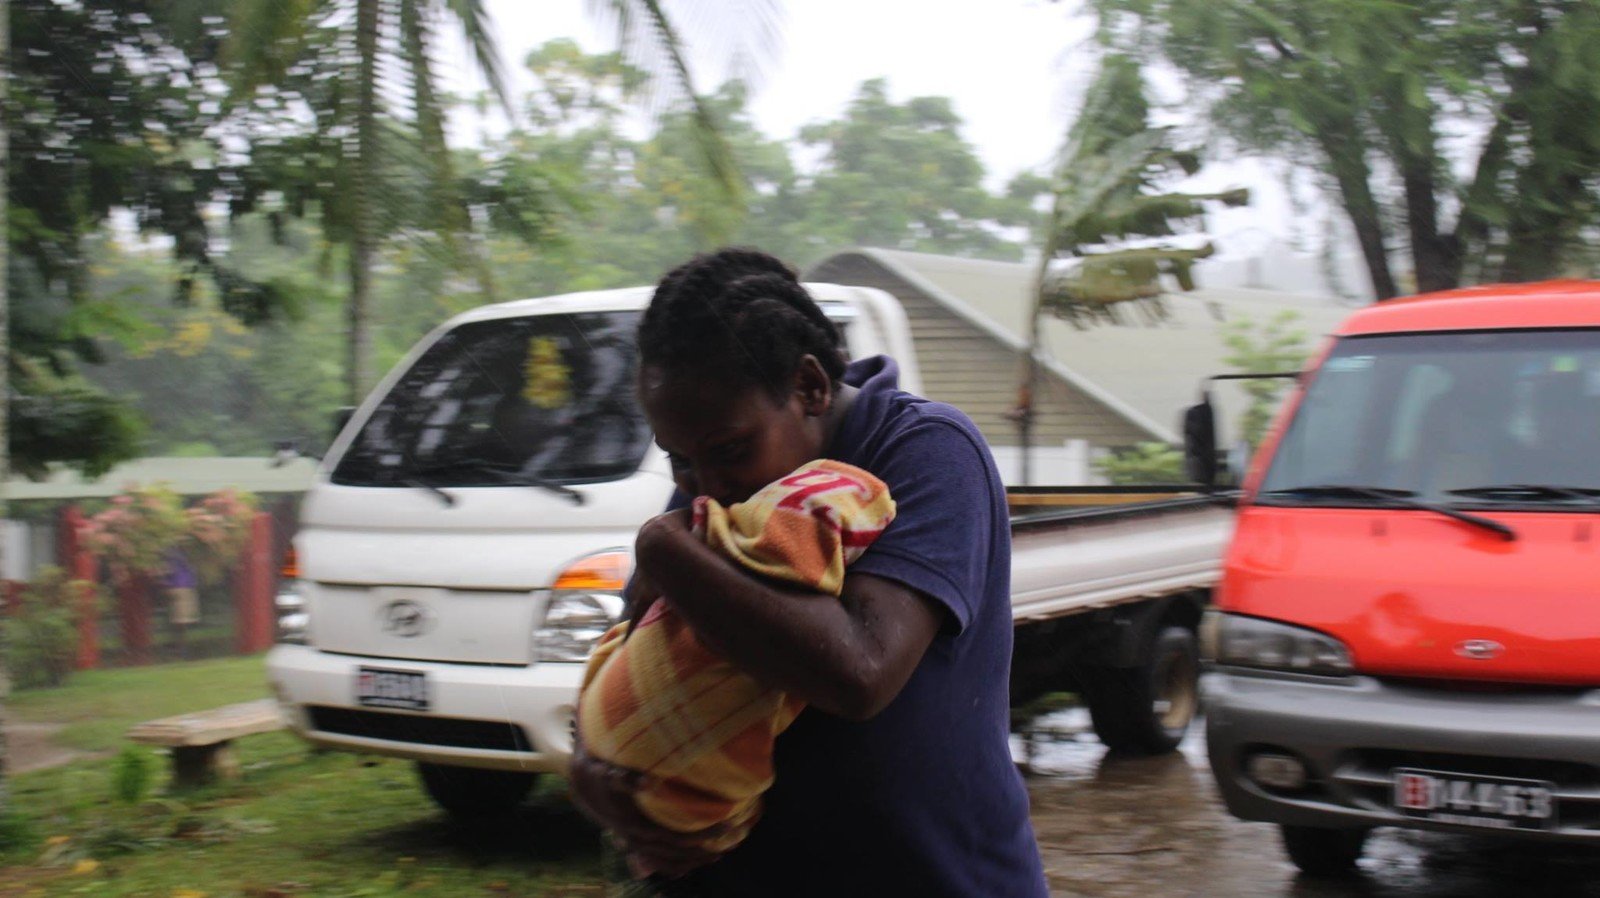 「帕姆」(Pam) 正面吹袭南太平洋岛国瓦努阿图，导致全国超过25万人受到严重影响。 (IssoNihmei/350.org)